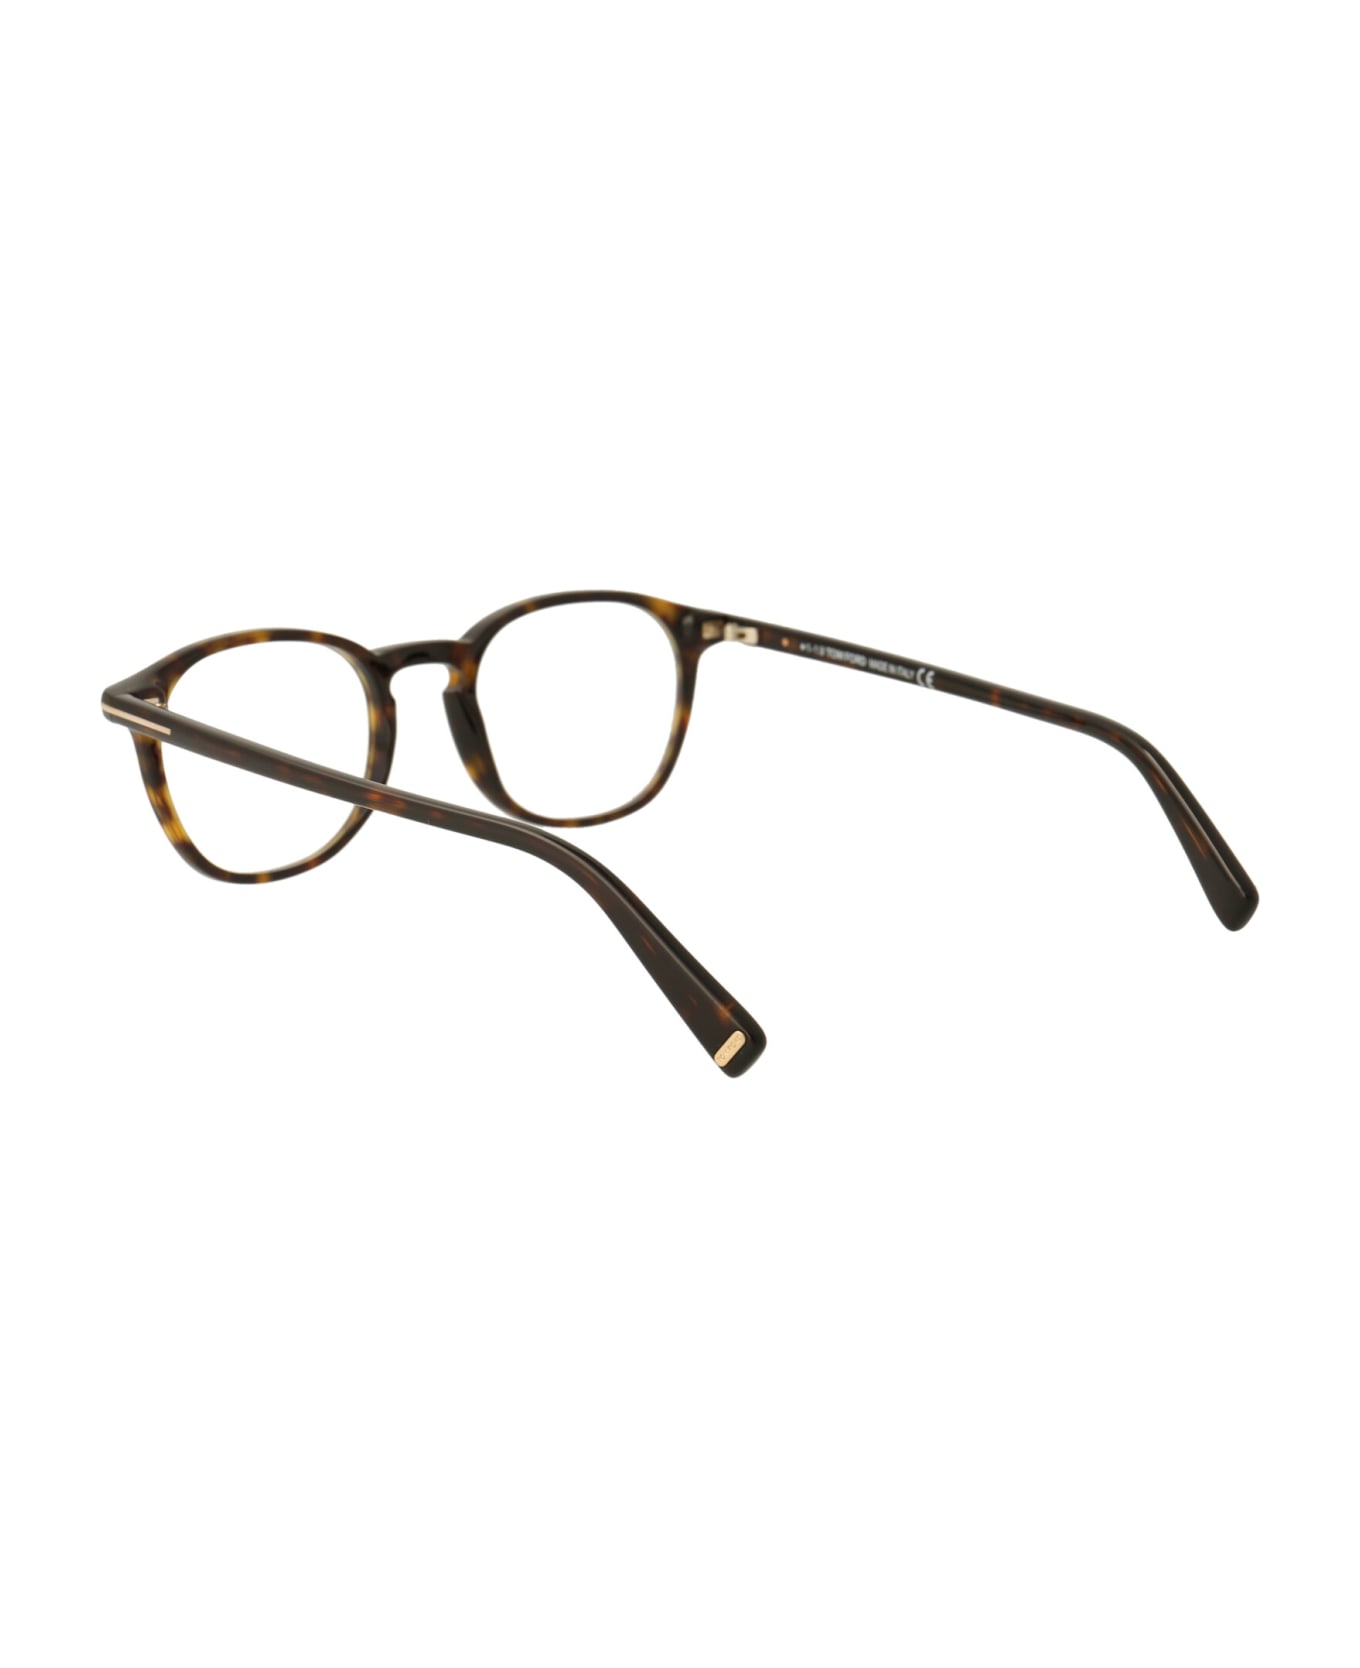 Tom Ford Eyewear Ft5583-b Glasses - 052 Avana Scura アイウェア